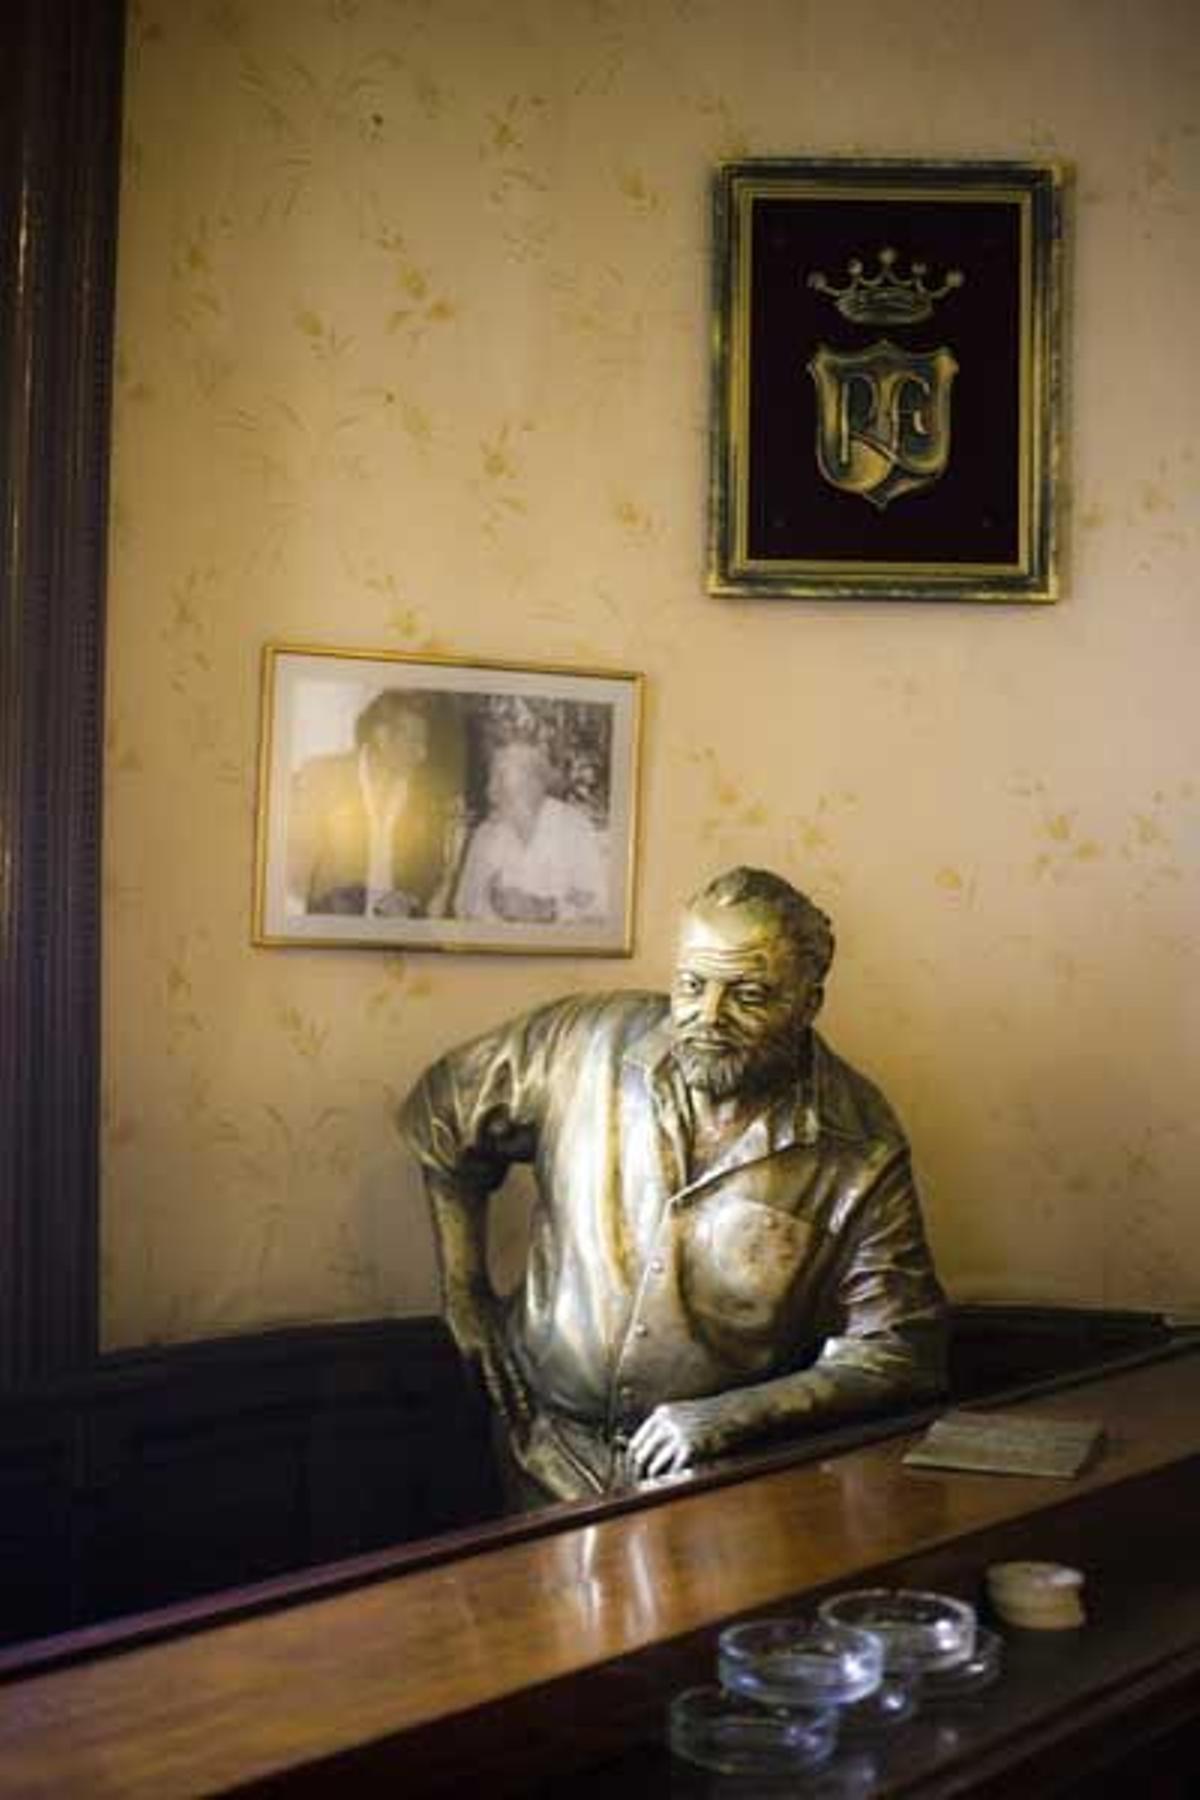 El Floridita, que ha cumplido195 años de vida, fue uno de los lugares predilectos de Hemingway. Dentro del local encontramos una estatua del escritor.